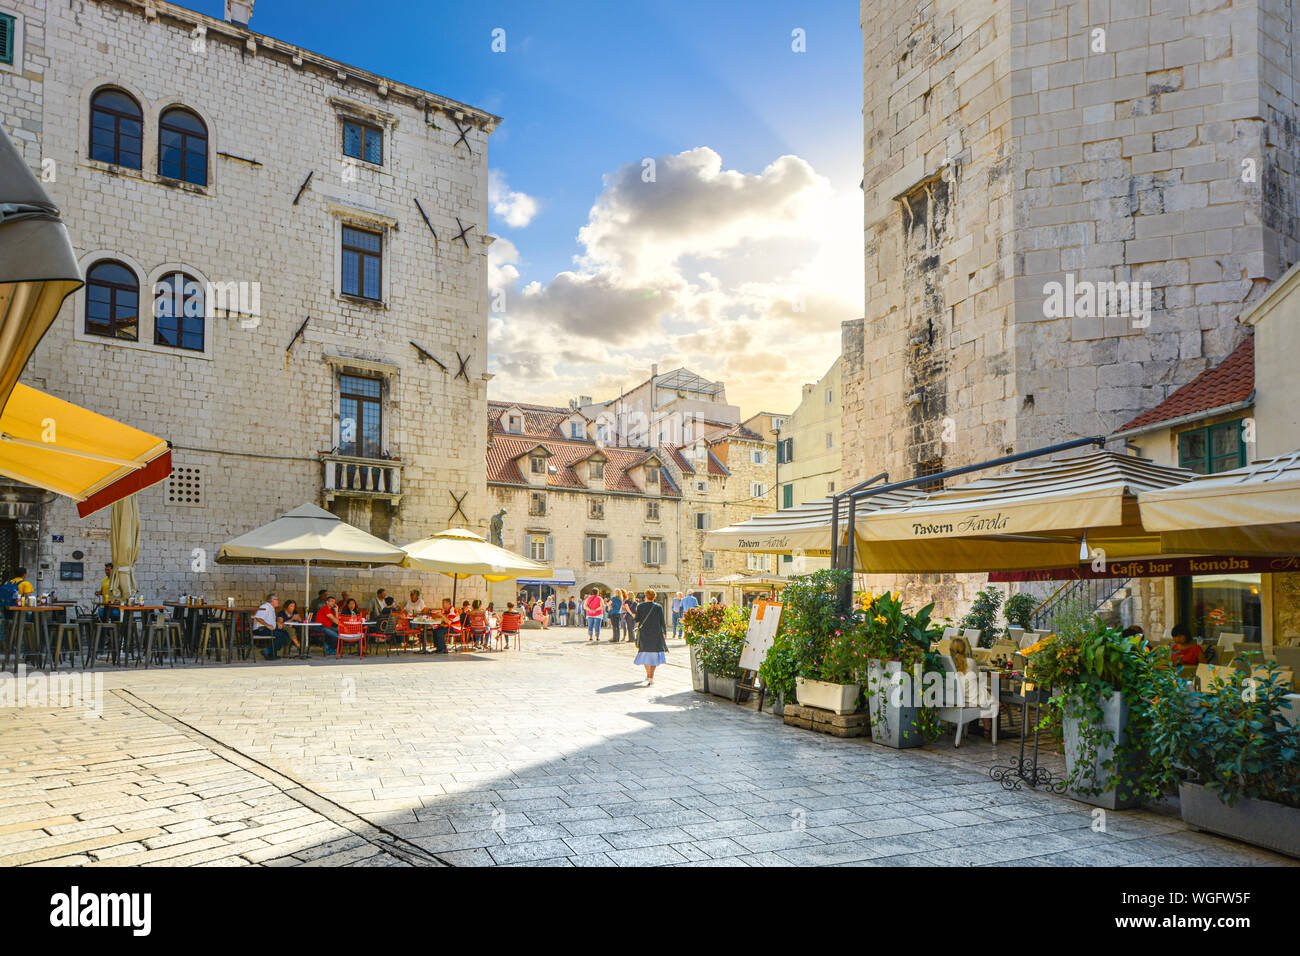 Los turistas disfrutan de un día soleado como comen en cafés y vidrieras en la Plaza de la fruta, dentro del antiguo Palacio de Diocleciano en Split, Croacia Foto de stock